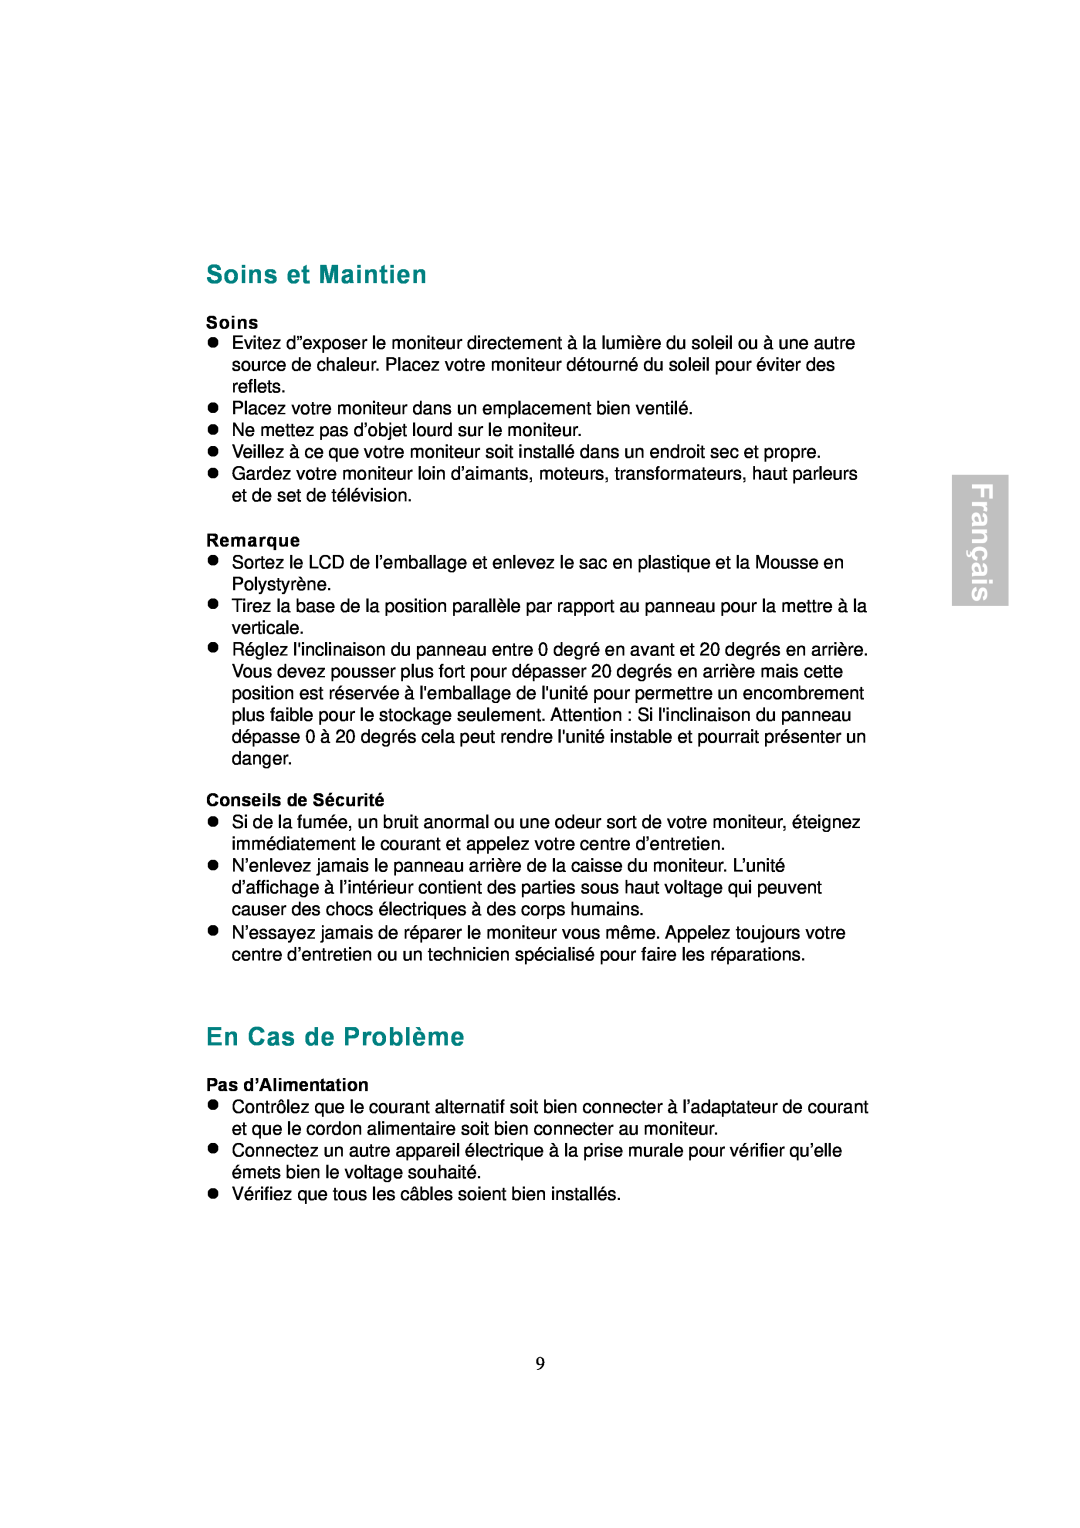 AOC 177Sa-1 manual Soins et Maintien, En Cas de Problème, Français, Remarque, Conseils de Sécurité, Pas d’Alimentation 